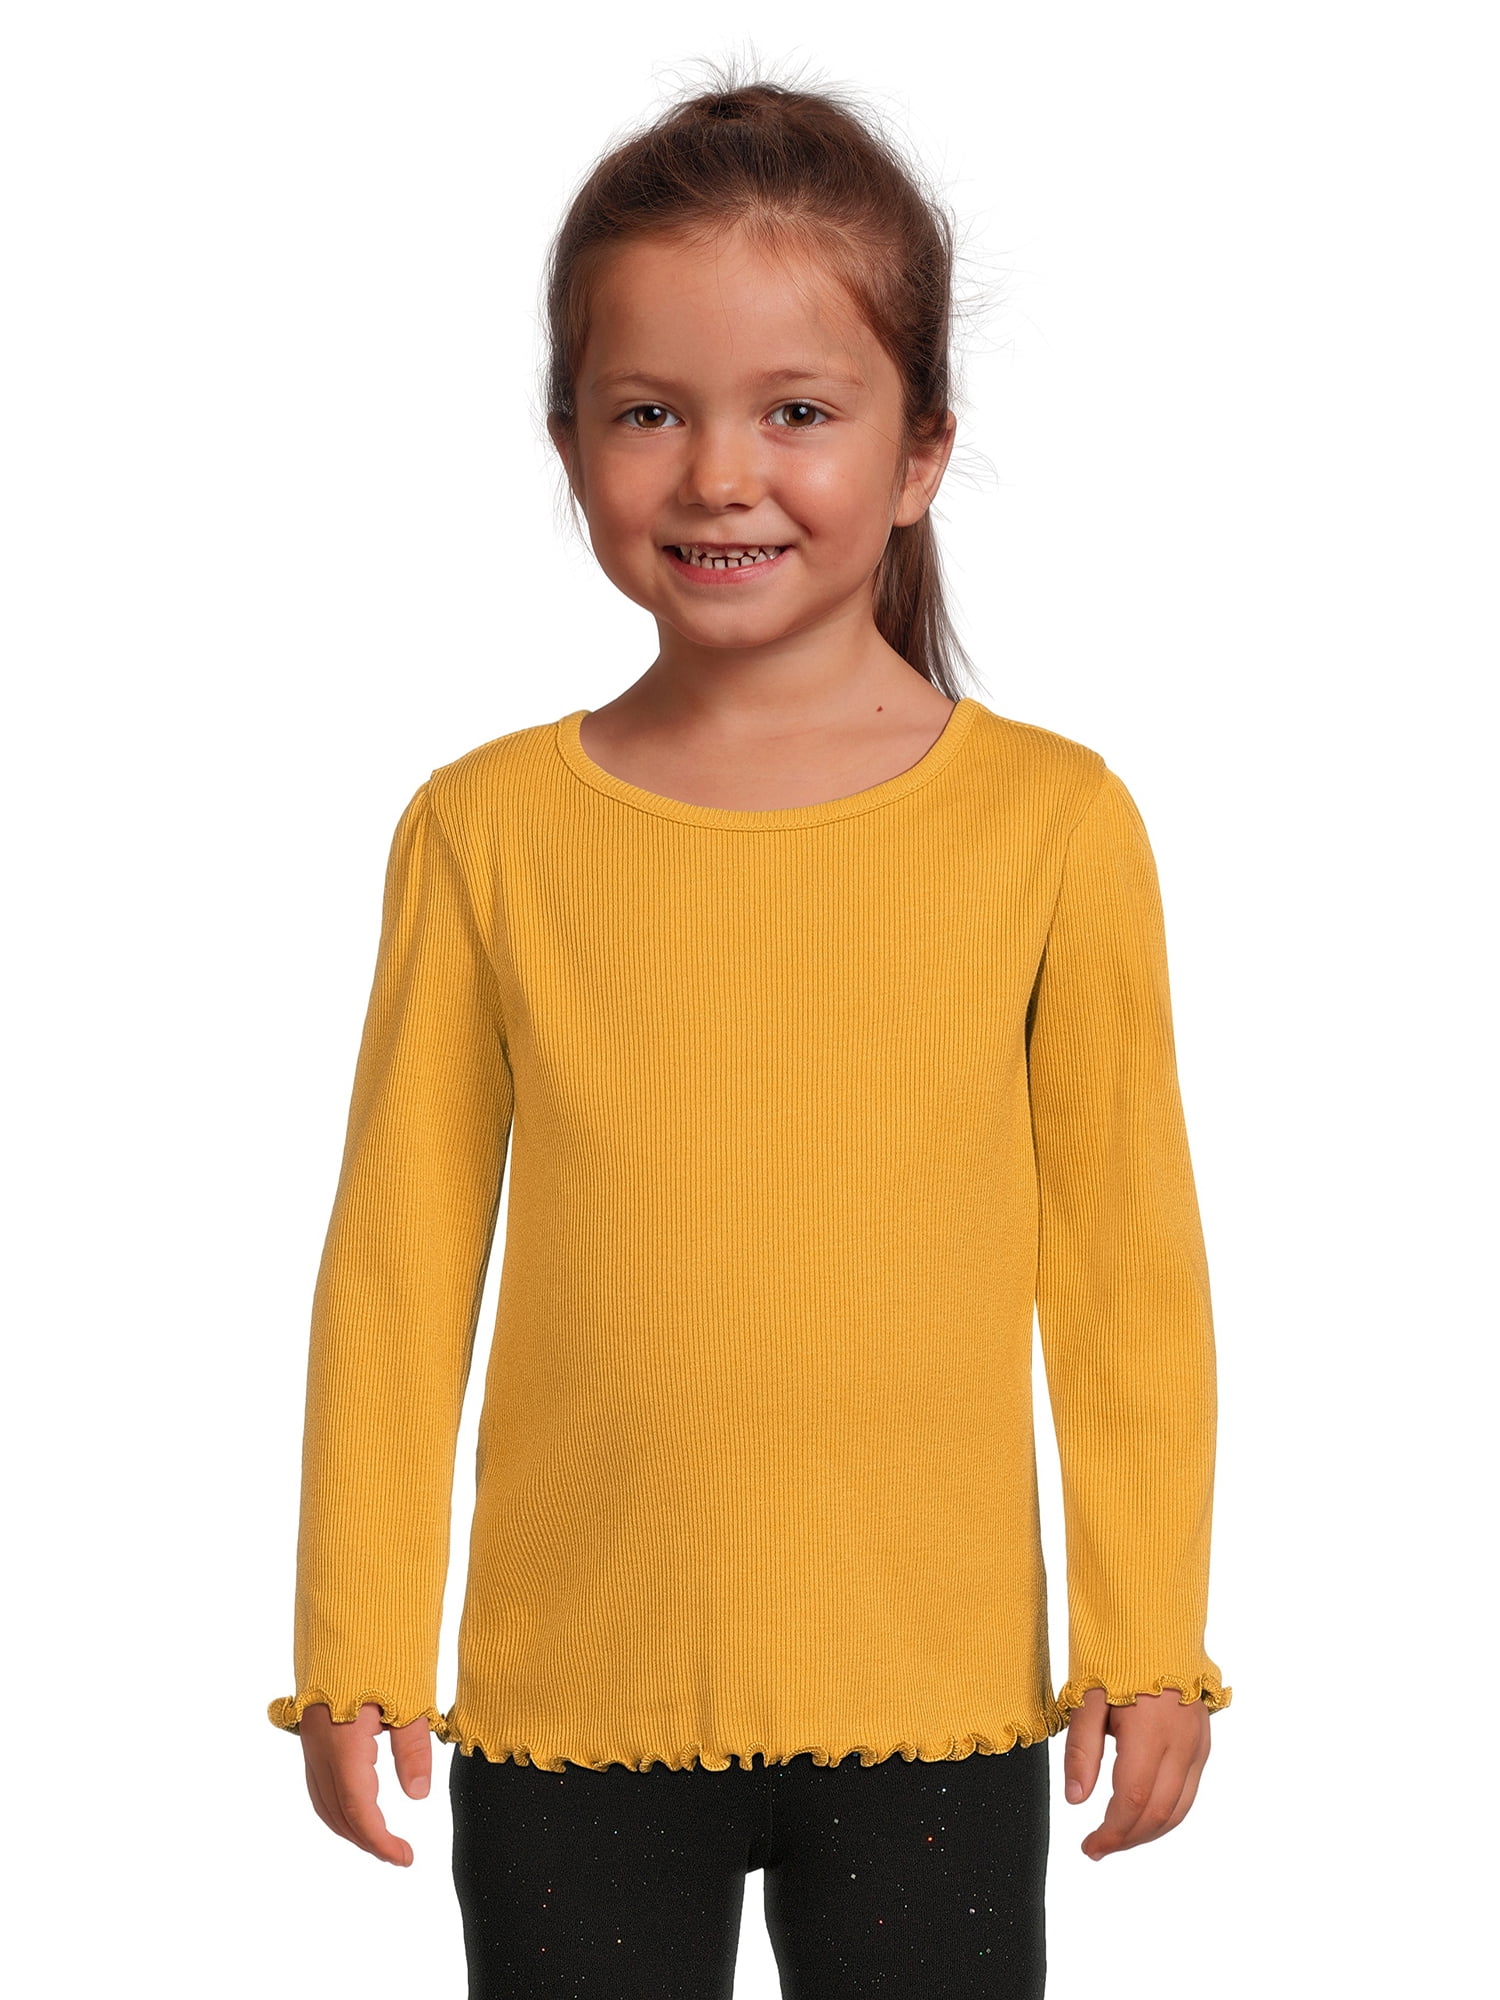 Garanimals Toddler Girl Ribbed Sizes Sleeve Top, 12M-5T Long